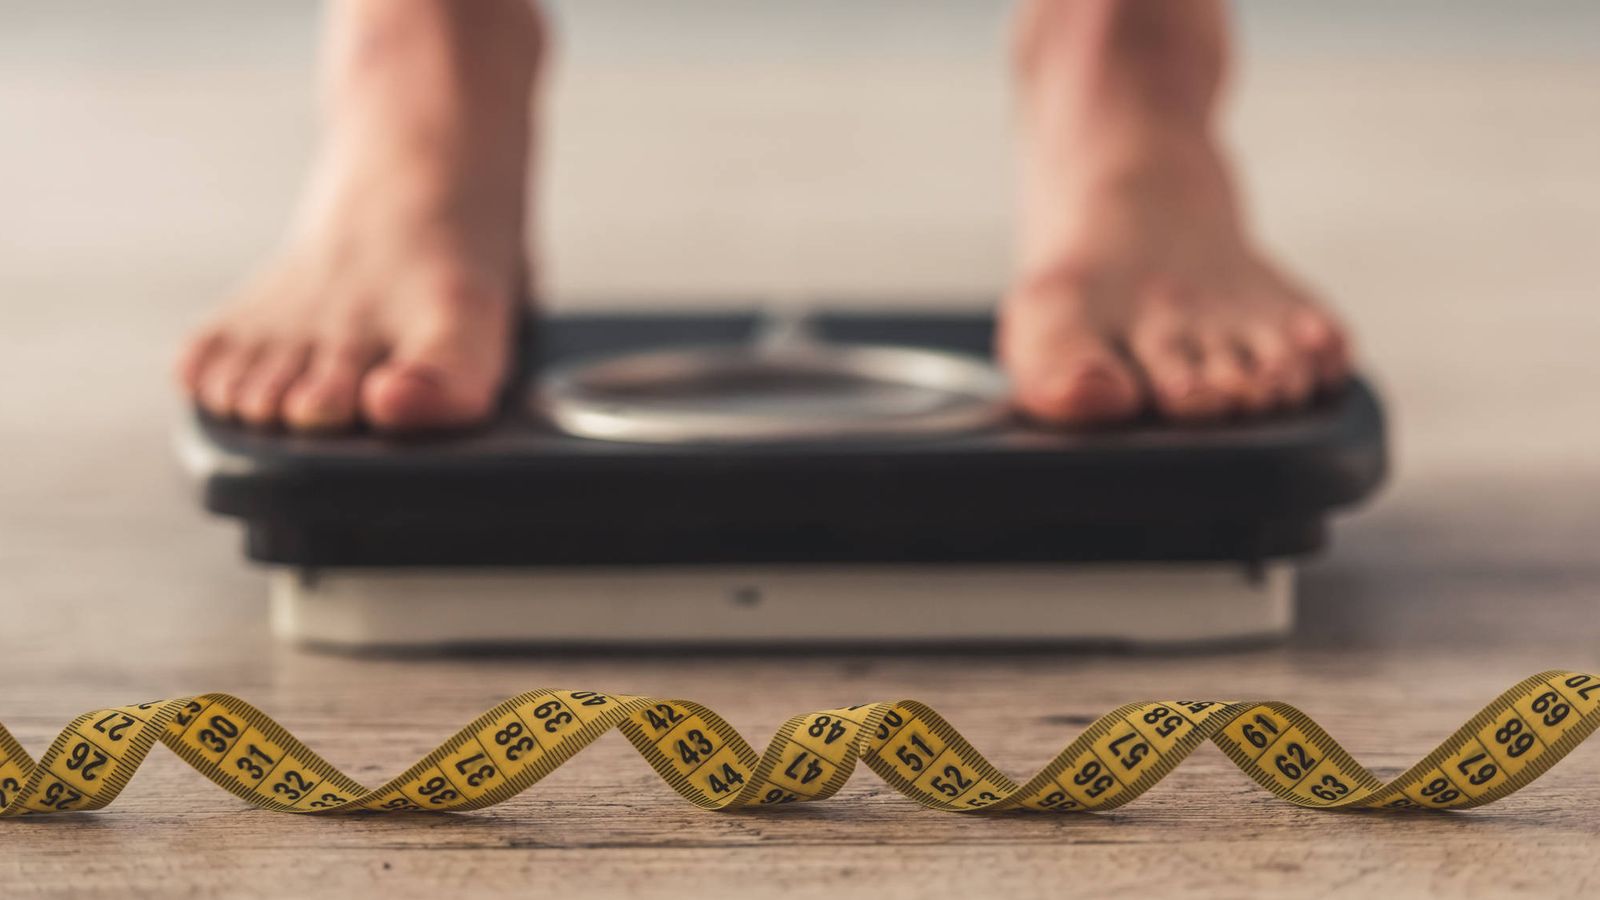 Foto: La obesidad y el sobrepeso no dependen tanto de lo que heredamos. iStock